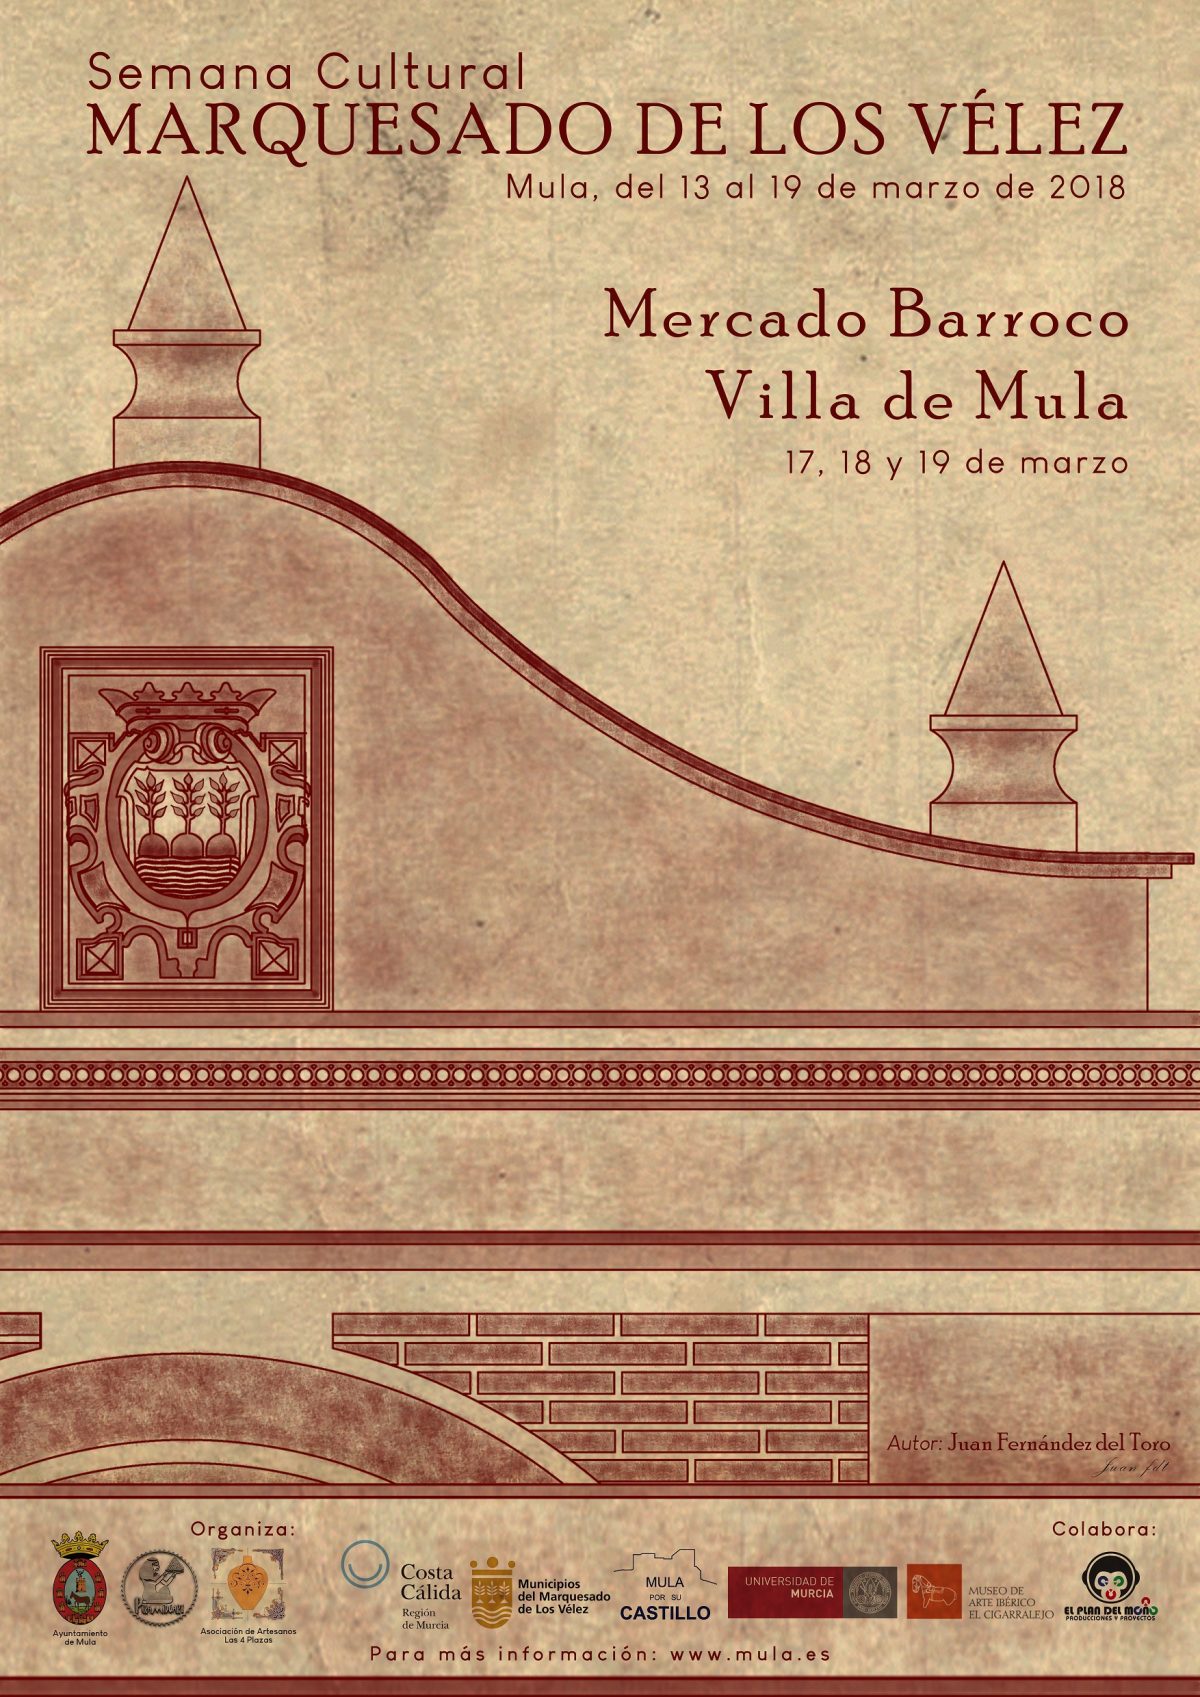 Semana Cultural Marquesado de los Vélez y Mercado Barroco Villa de Mula